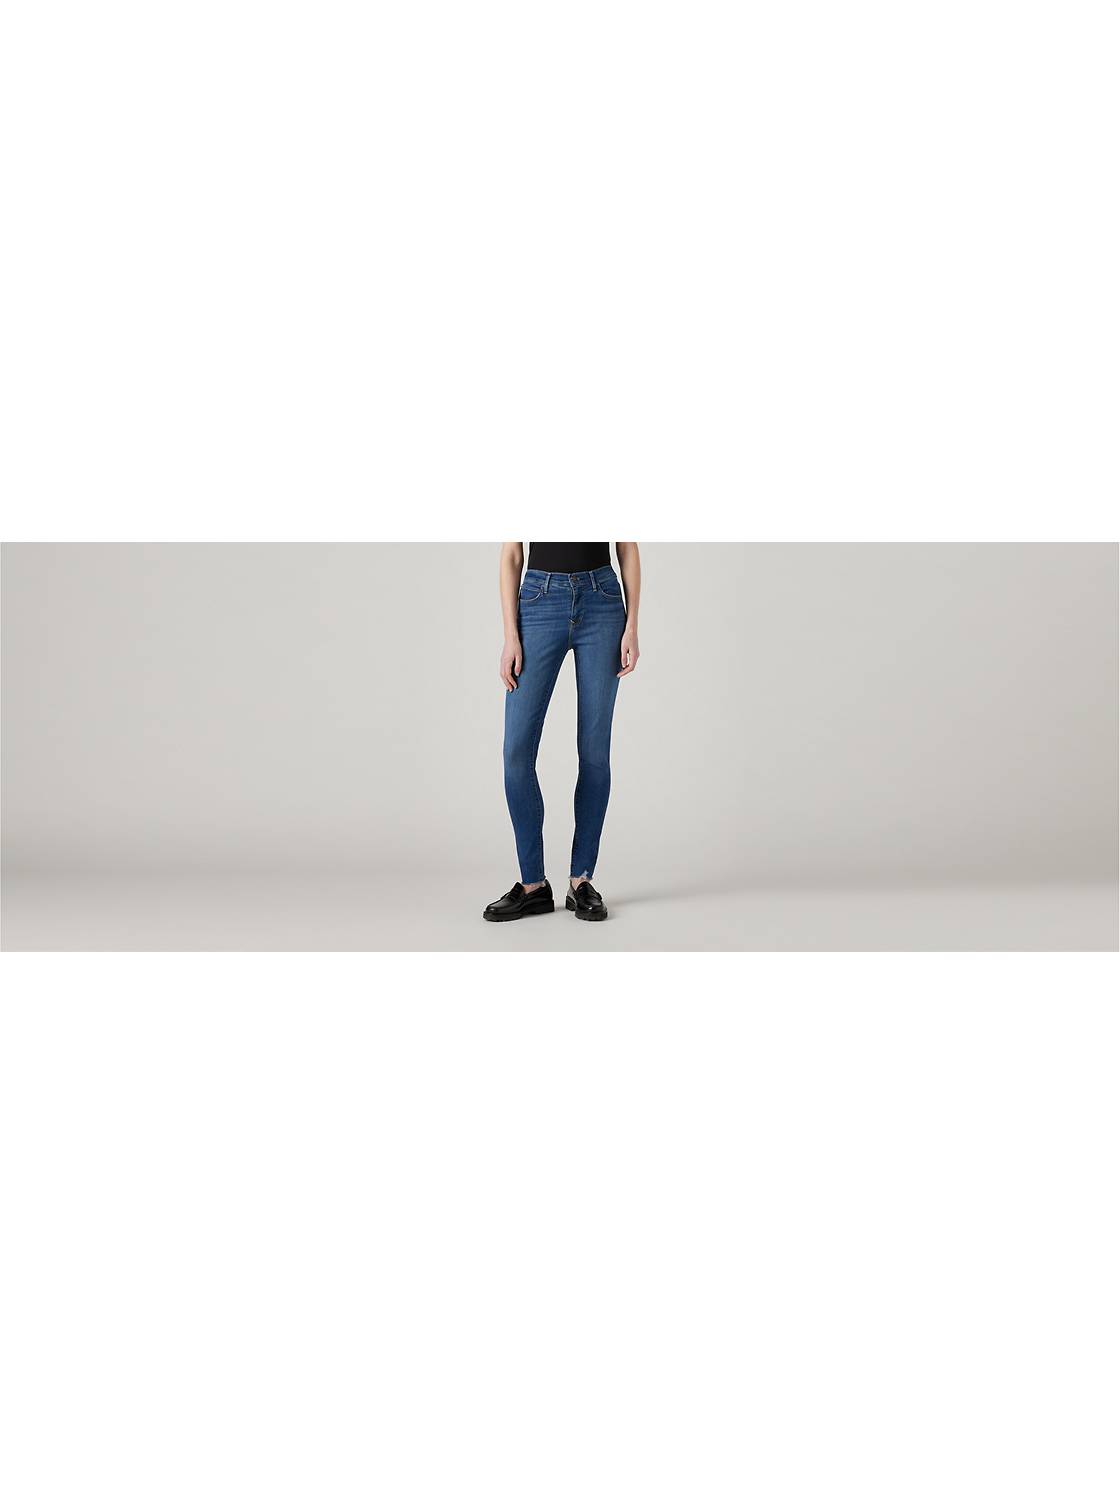  Levi's - Jeans de mujer súper ajustados de tiro alto, Mile High  Super Skinny, 33 cintura x 30 largo : Ropa, Zapatos y Joyería